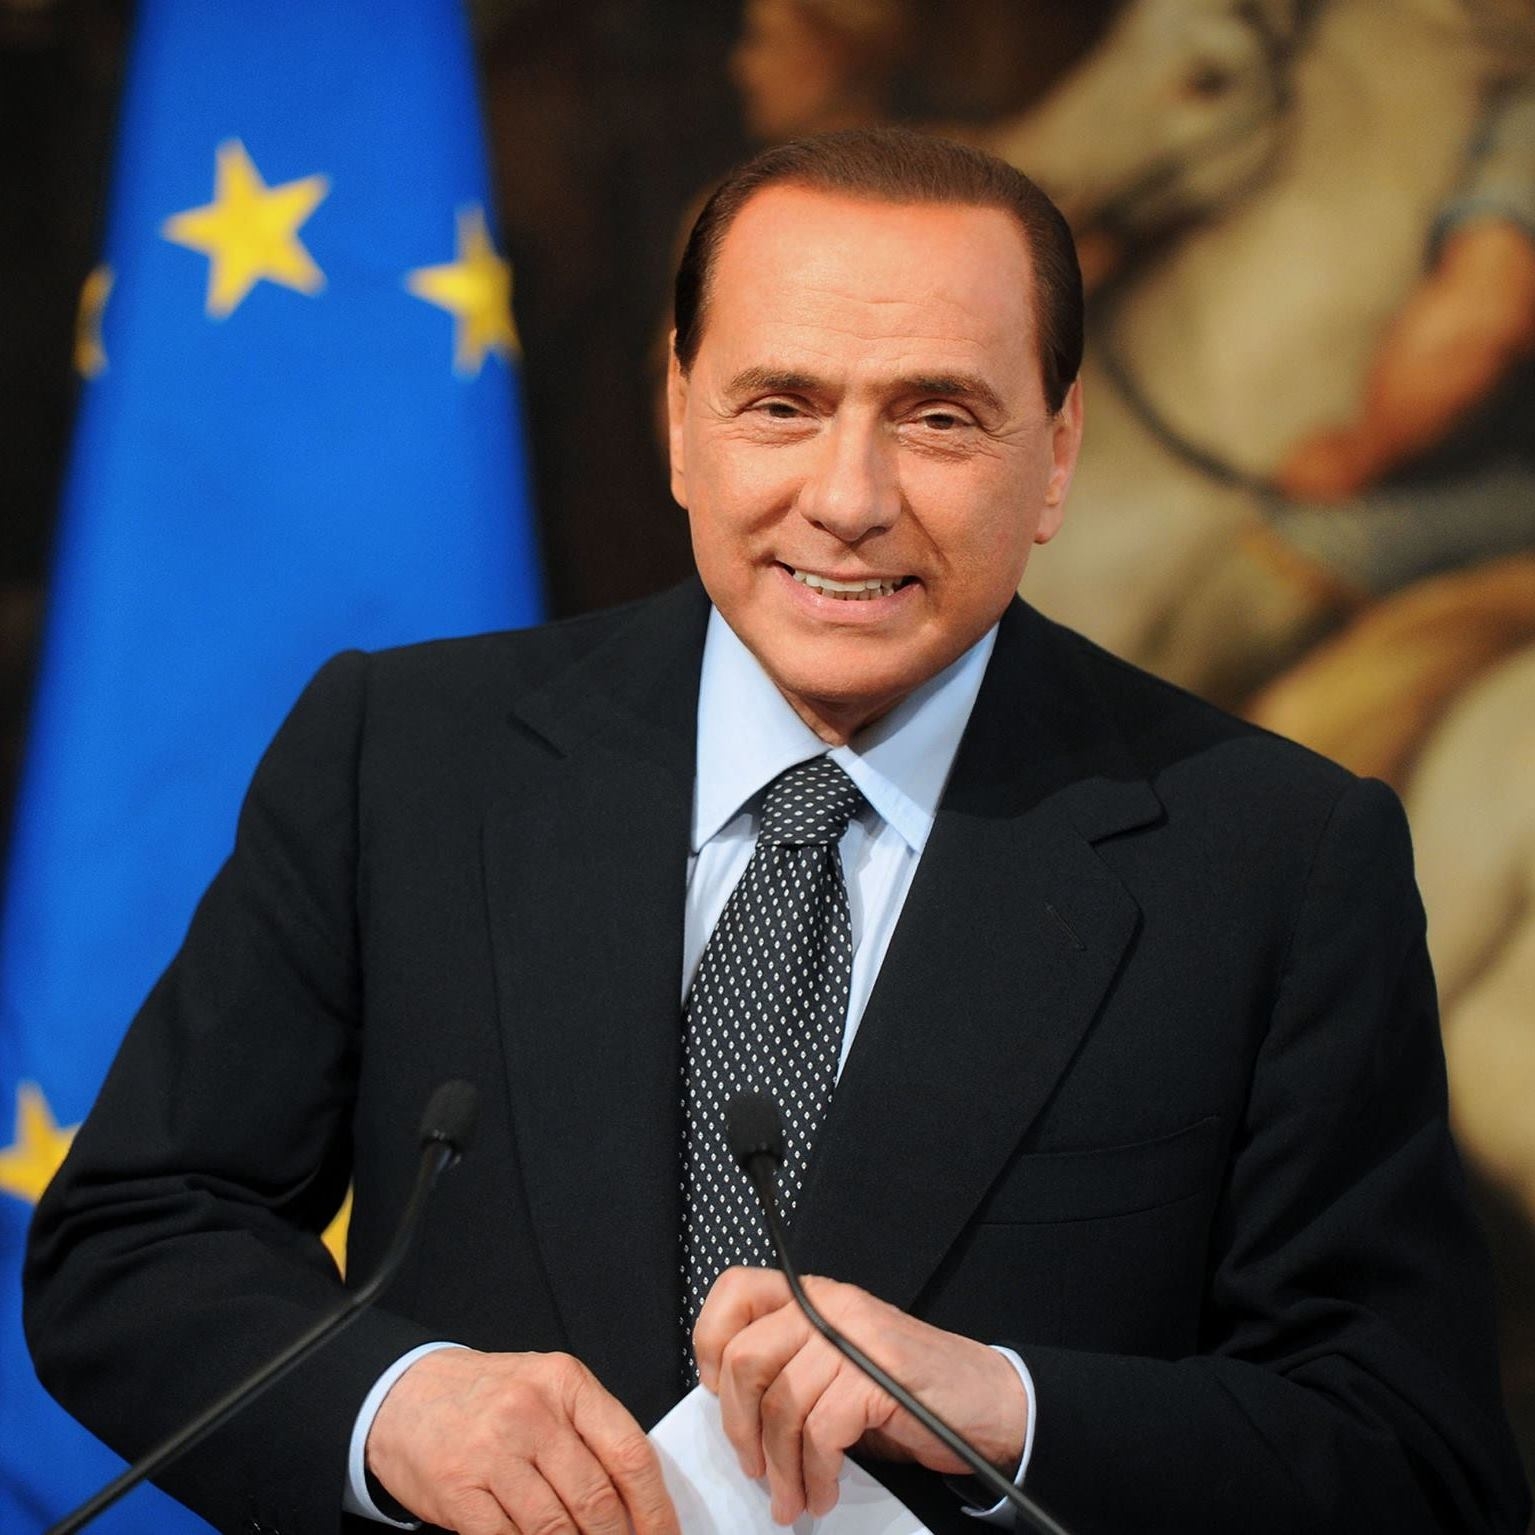 Silvio Berlusconi 2018